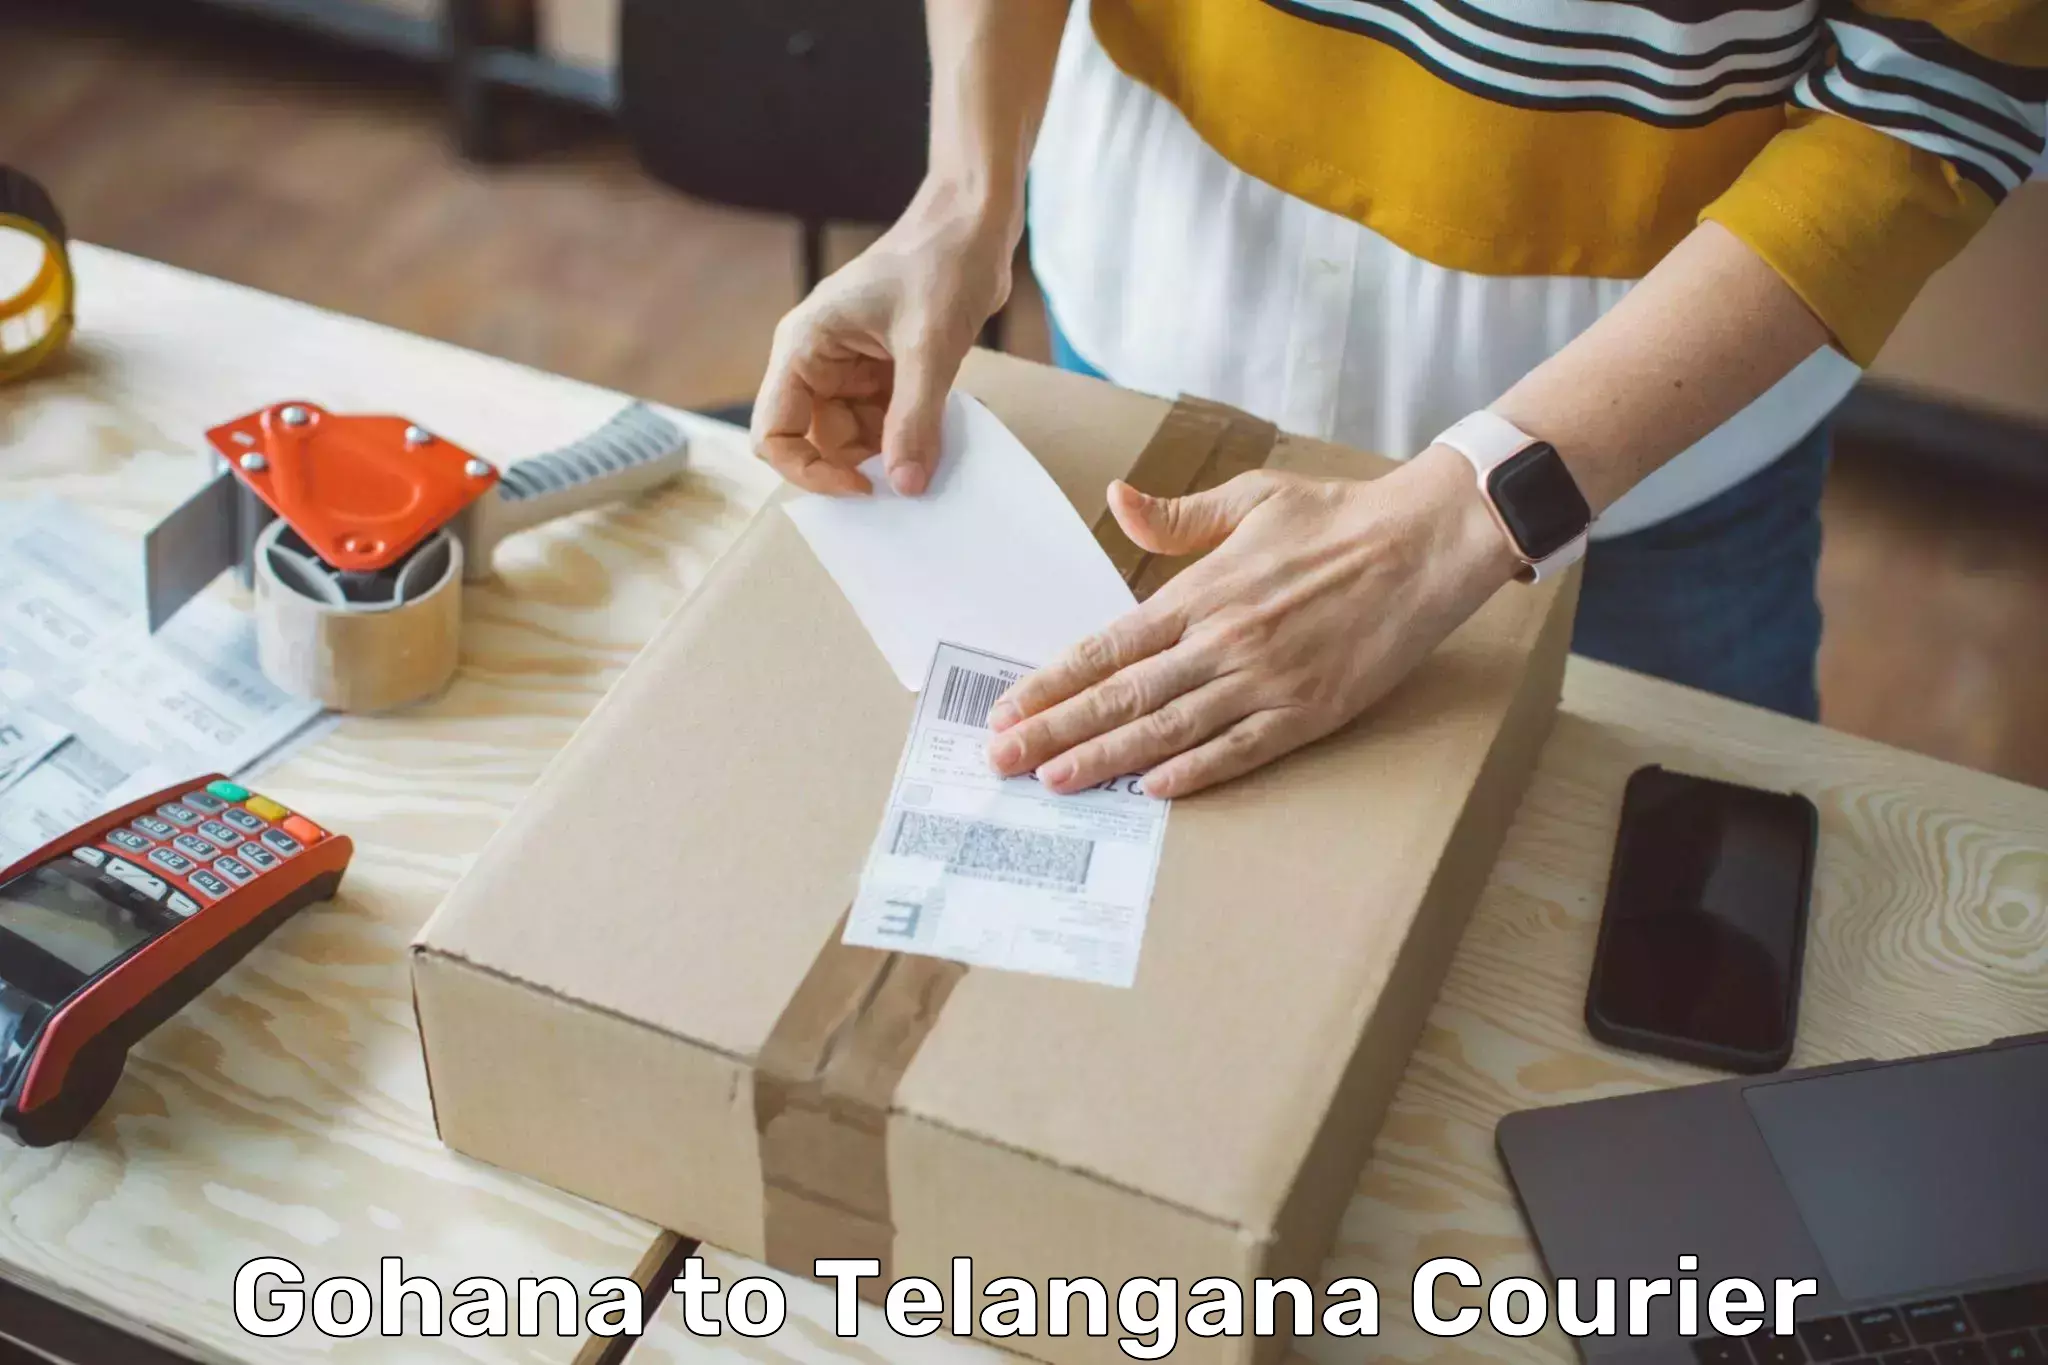 24-hour courier service Gohana to Tadvai